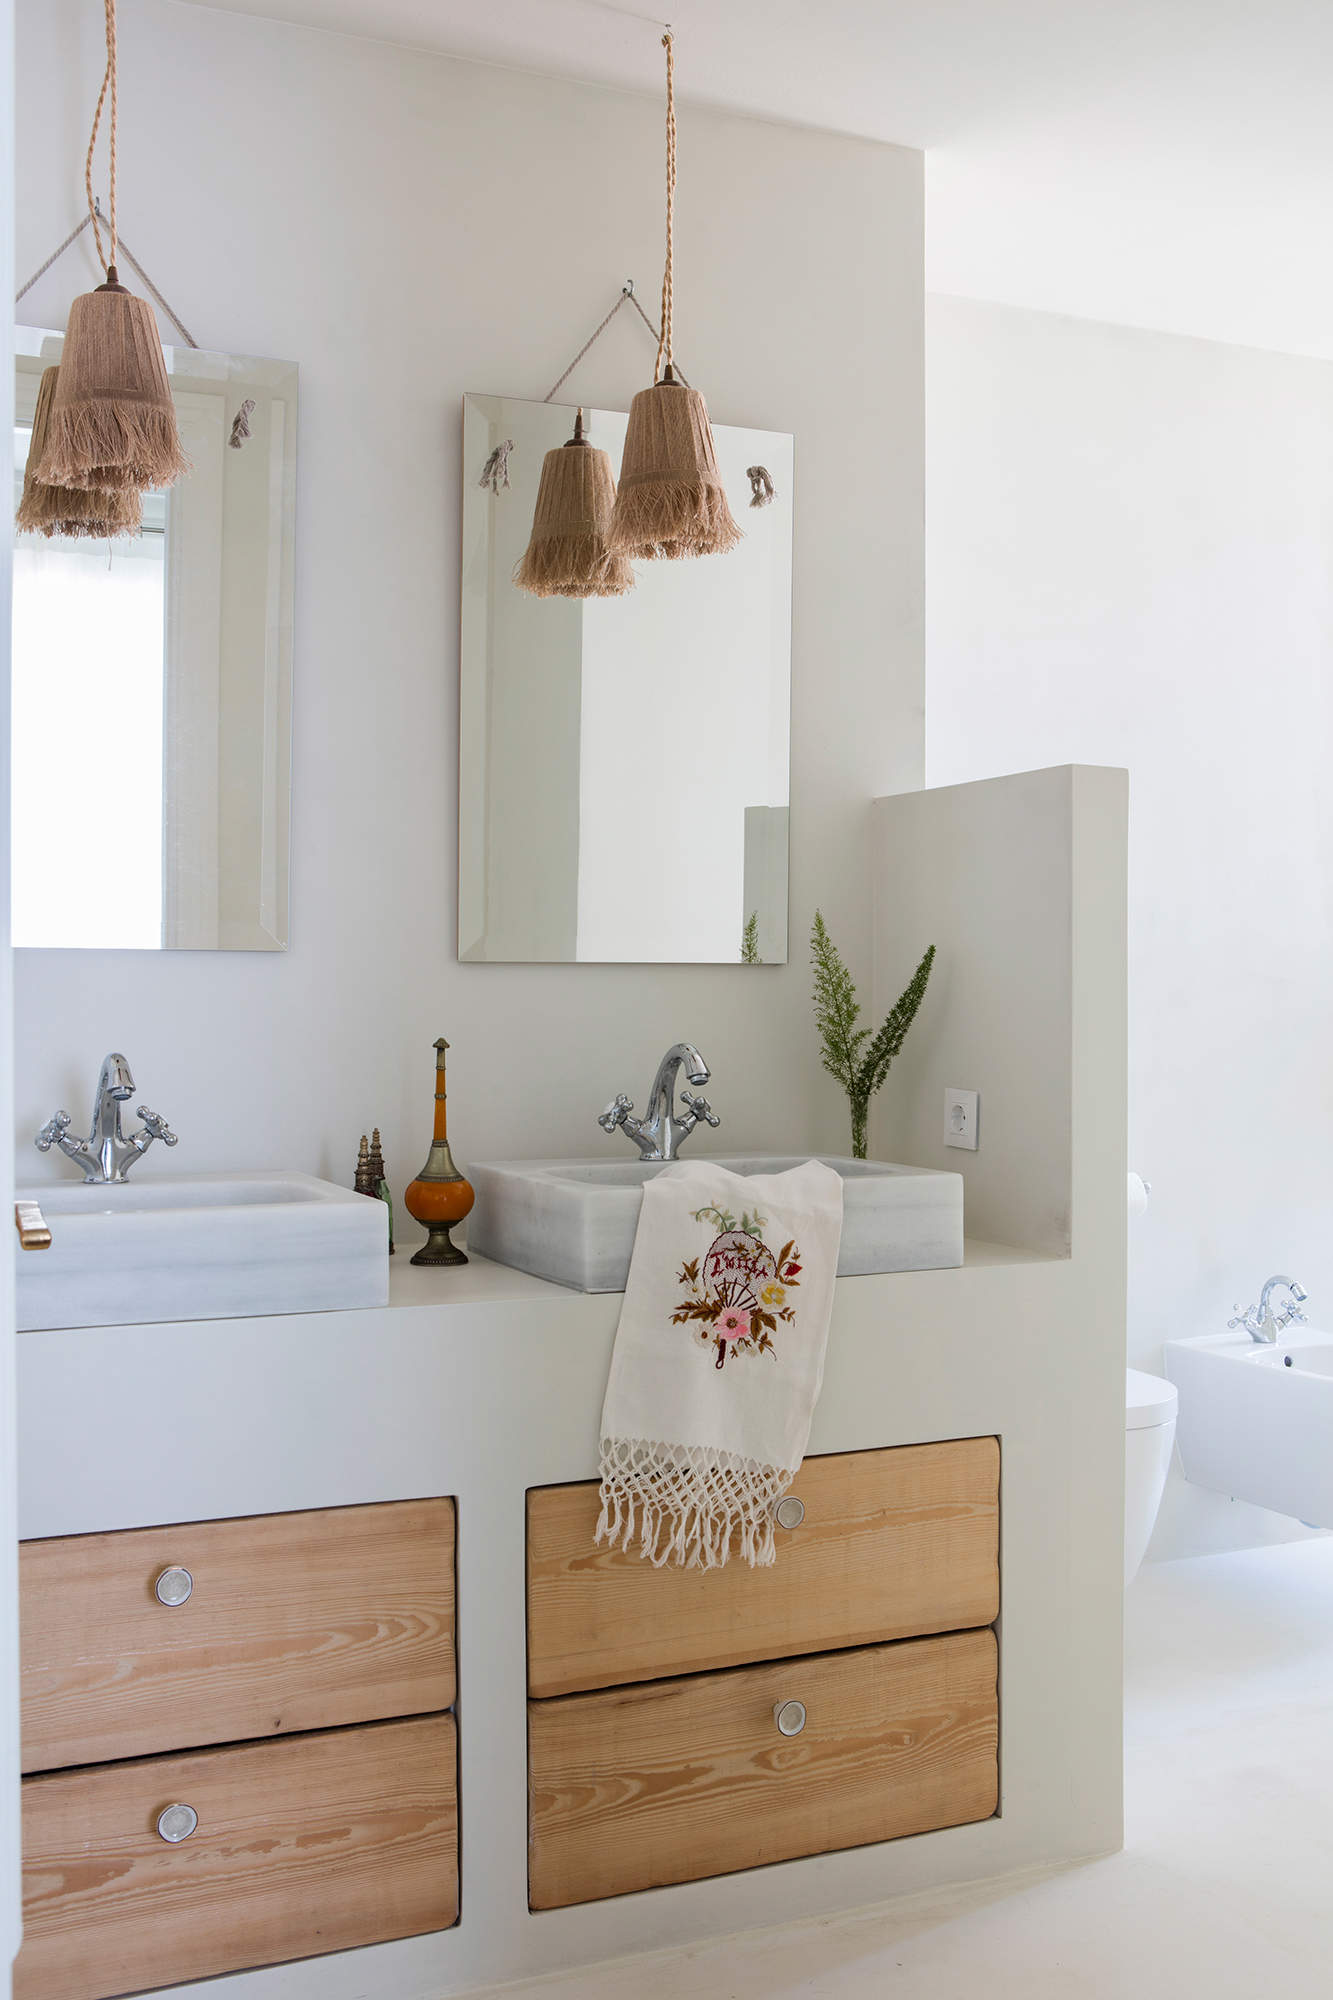 Baño con mueble de obra, espejos y lámparas suspendidas de fibra